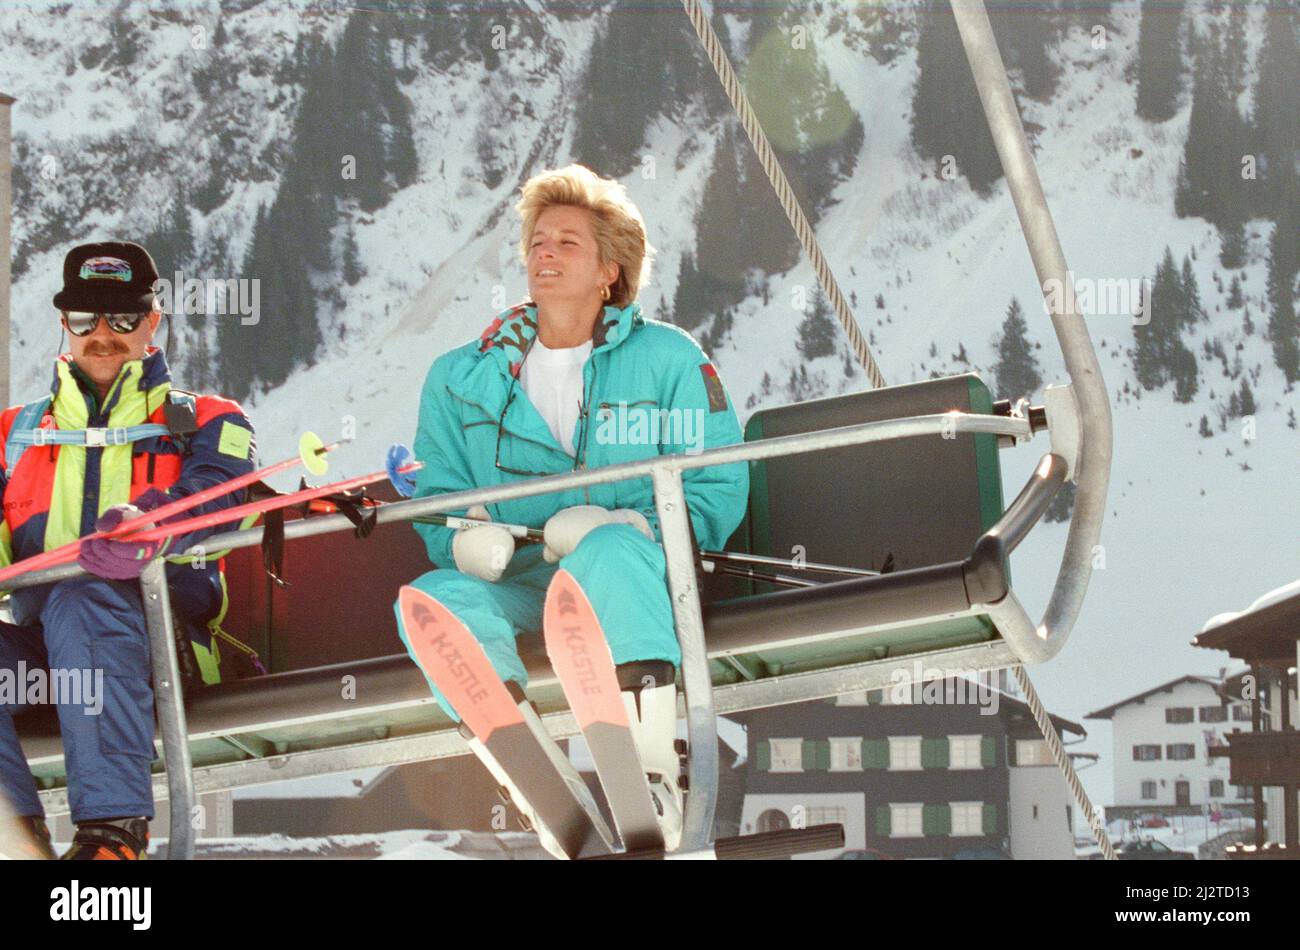 HRH La Princesa de Gales, la Princesa Diana, disfruta de unas vacaciones de esquí en Lech, Austria. El Príncipe William y el Príncipe Harry se unen a ella para el viaje. Foto tomada el 1st de abril de 1993 Foto de stock